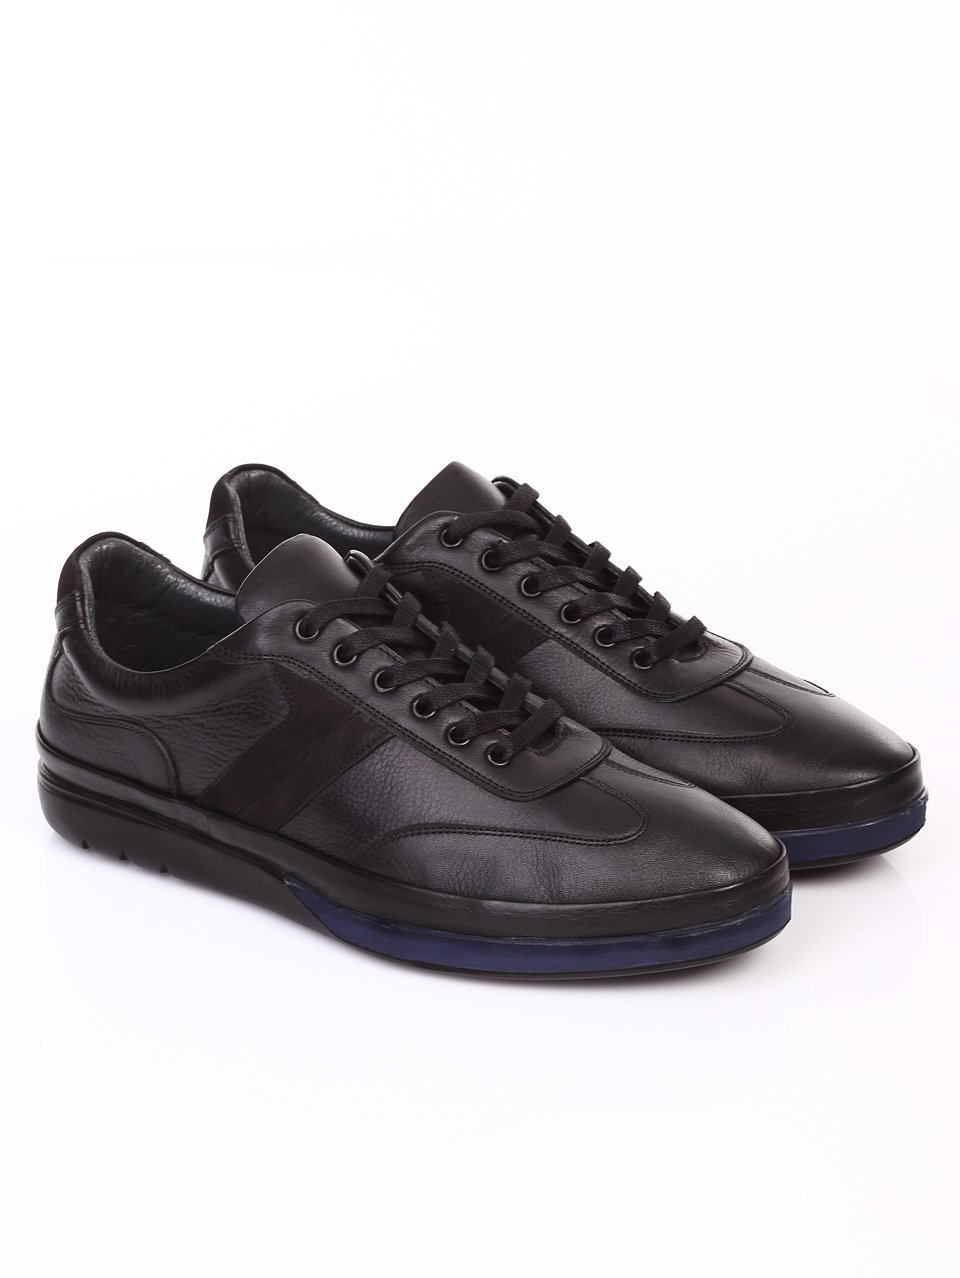 Ежедневни мъжки обувки от естествена кожа 7AT-16888 black